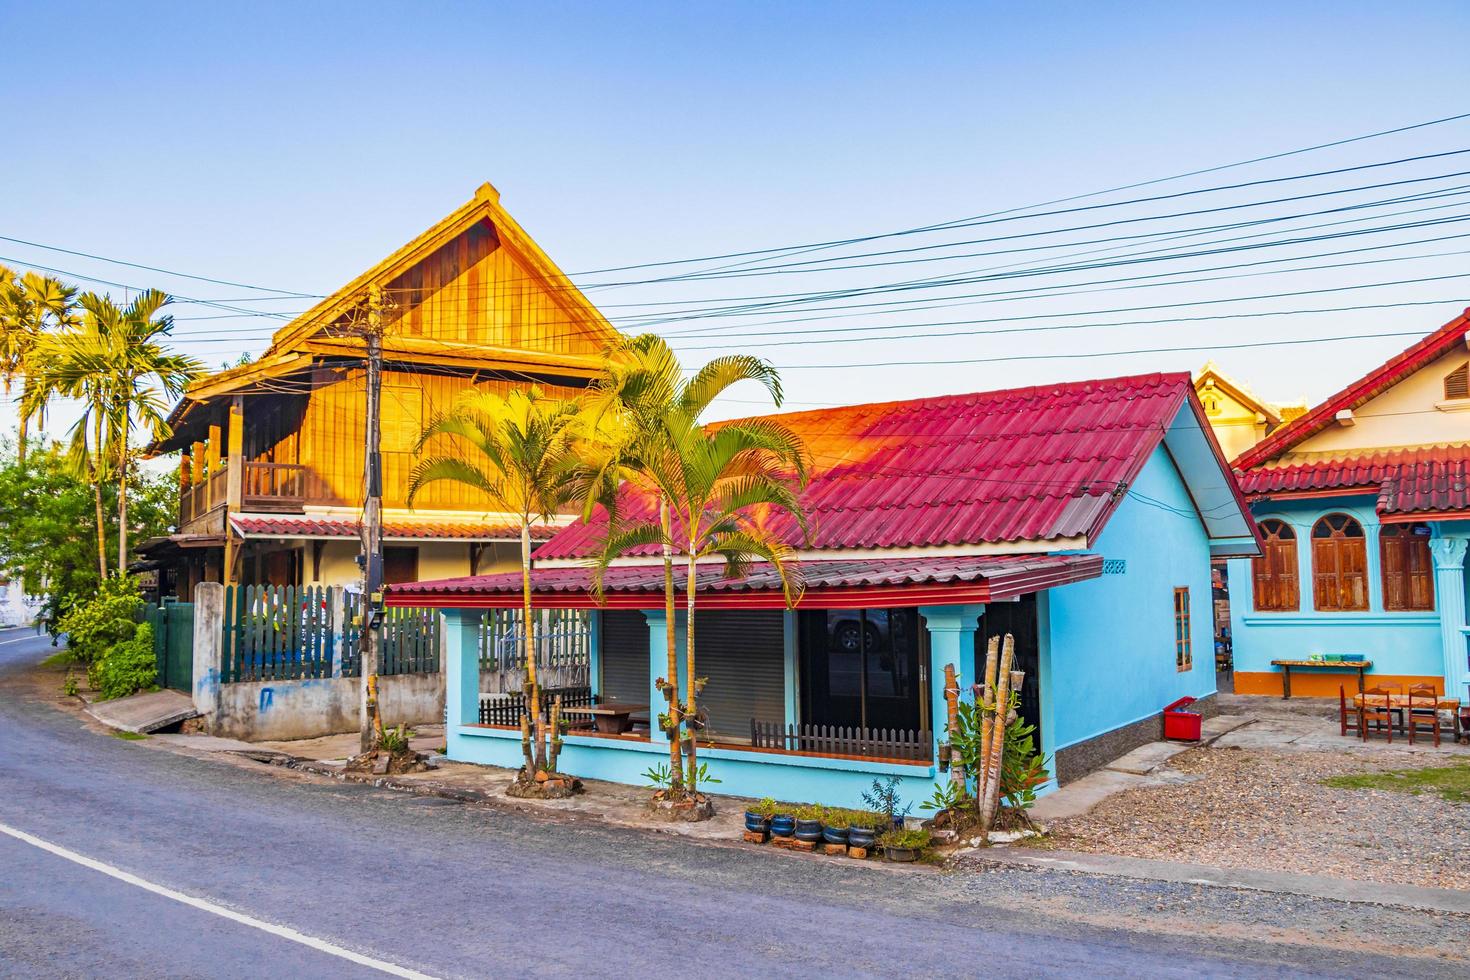 luang prabang, laos 2018- typiska färgglada gator i staden luang prabang laos foto